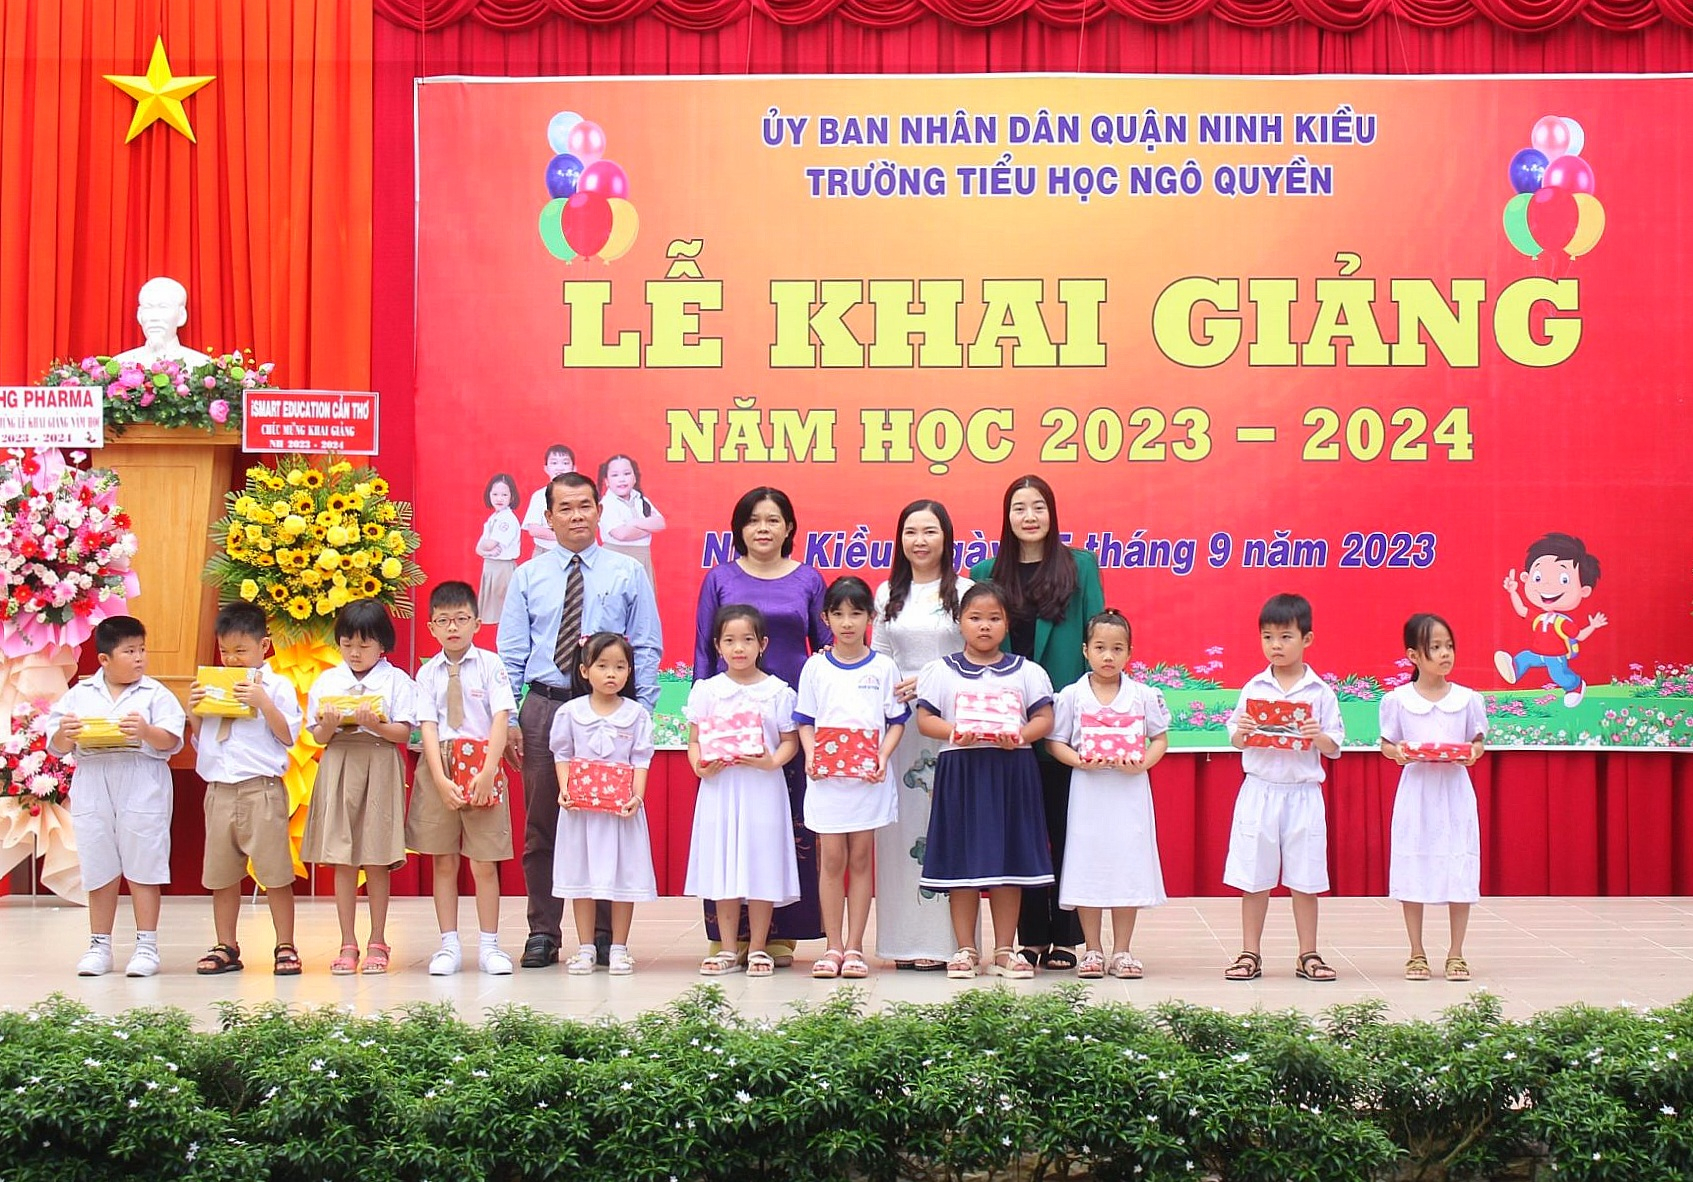 Đại biểu và Ban giám hiệu Trường Tiểu học Ngô Quyền, quận Ninh Kiều tặng quà cho các em học sinh.